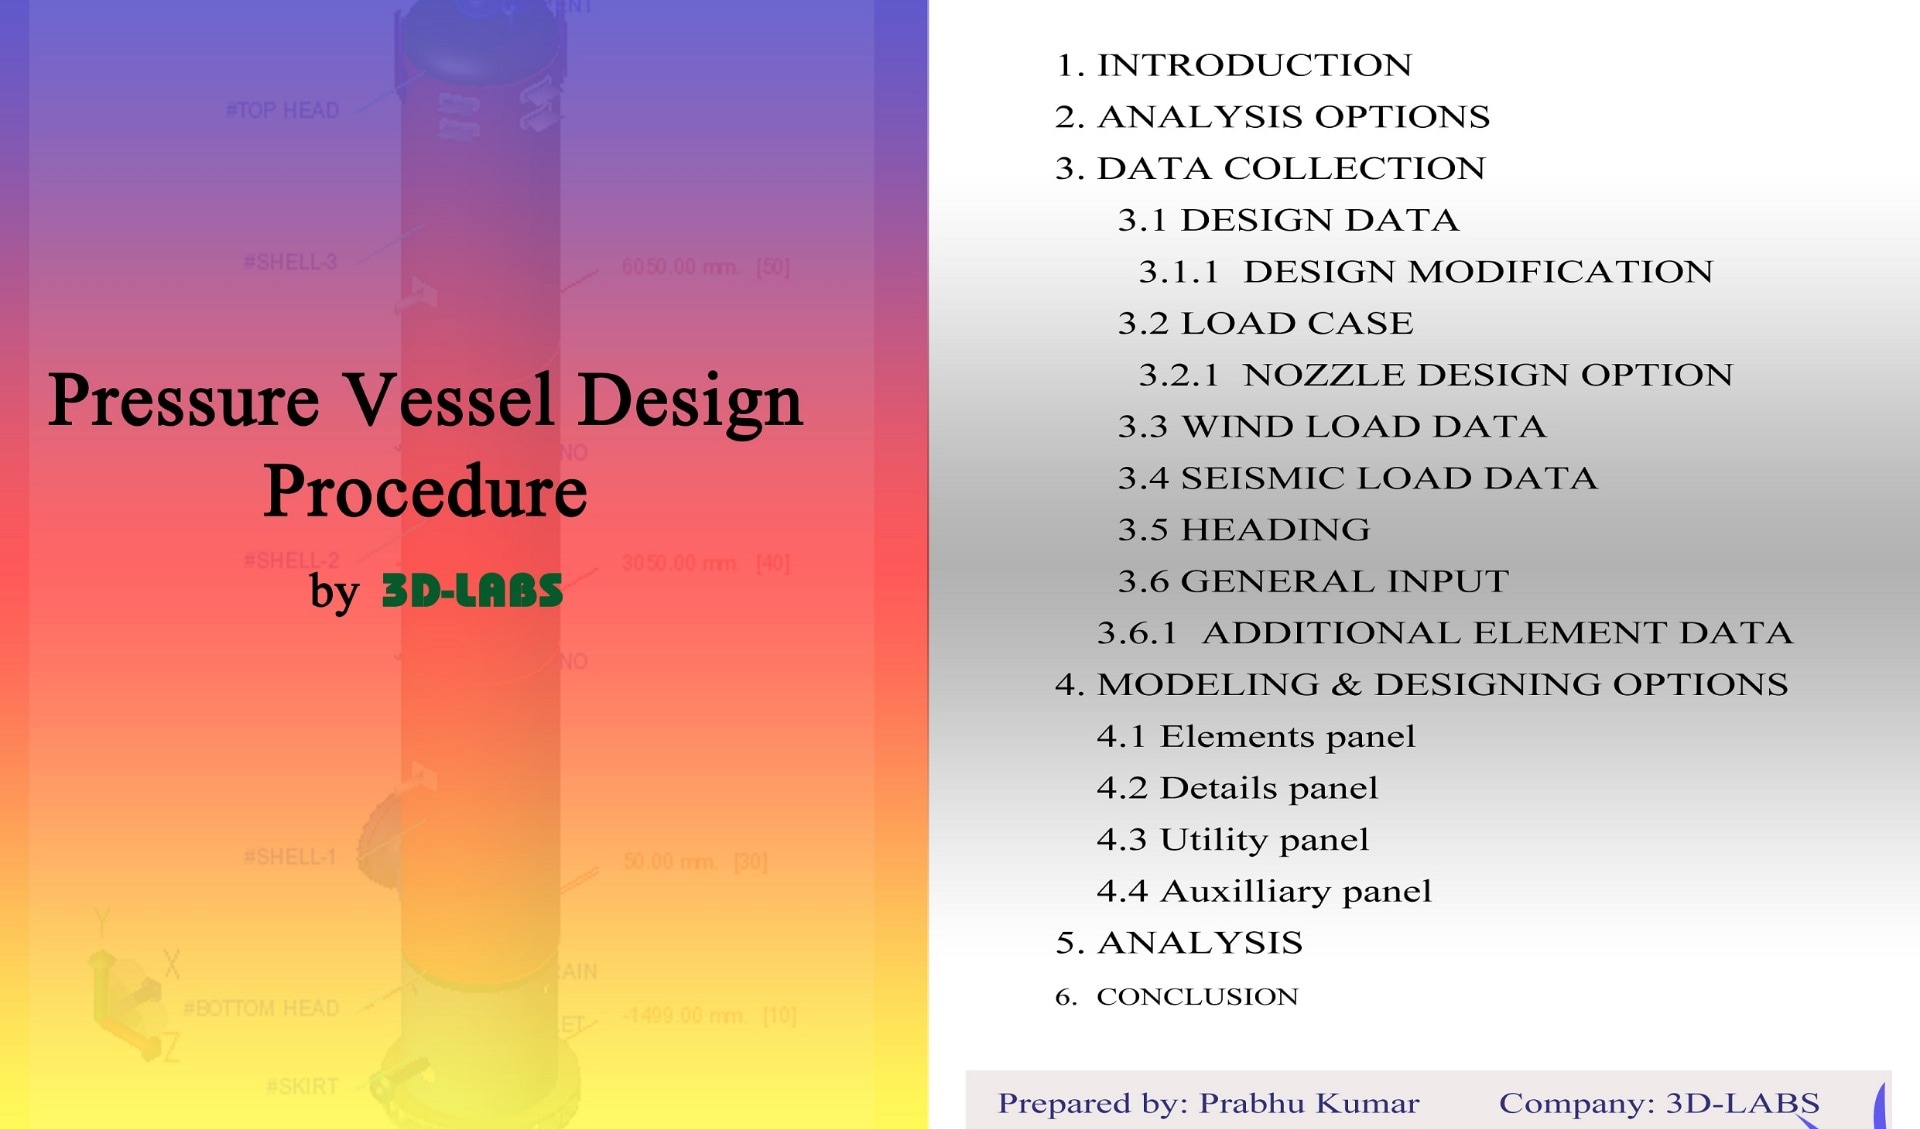 Pressure Vessel Design